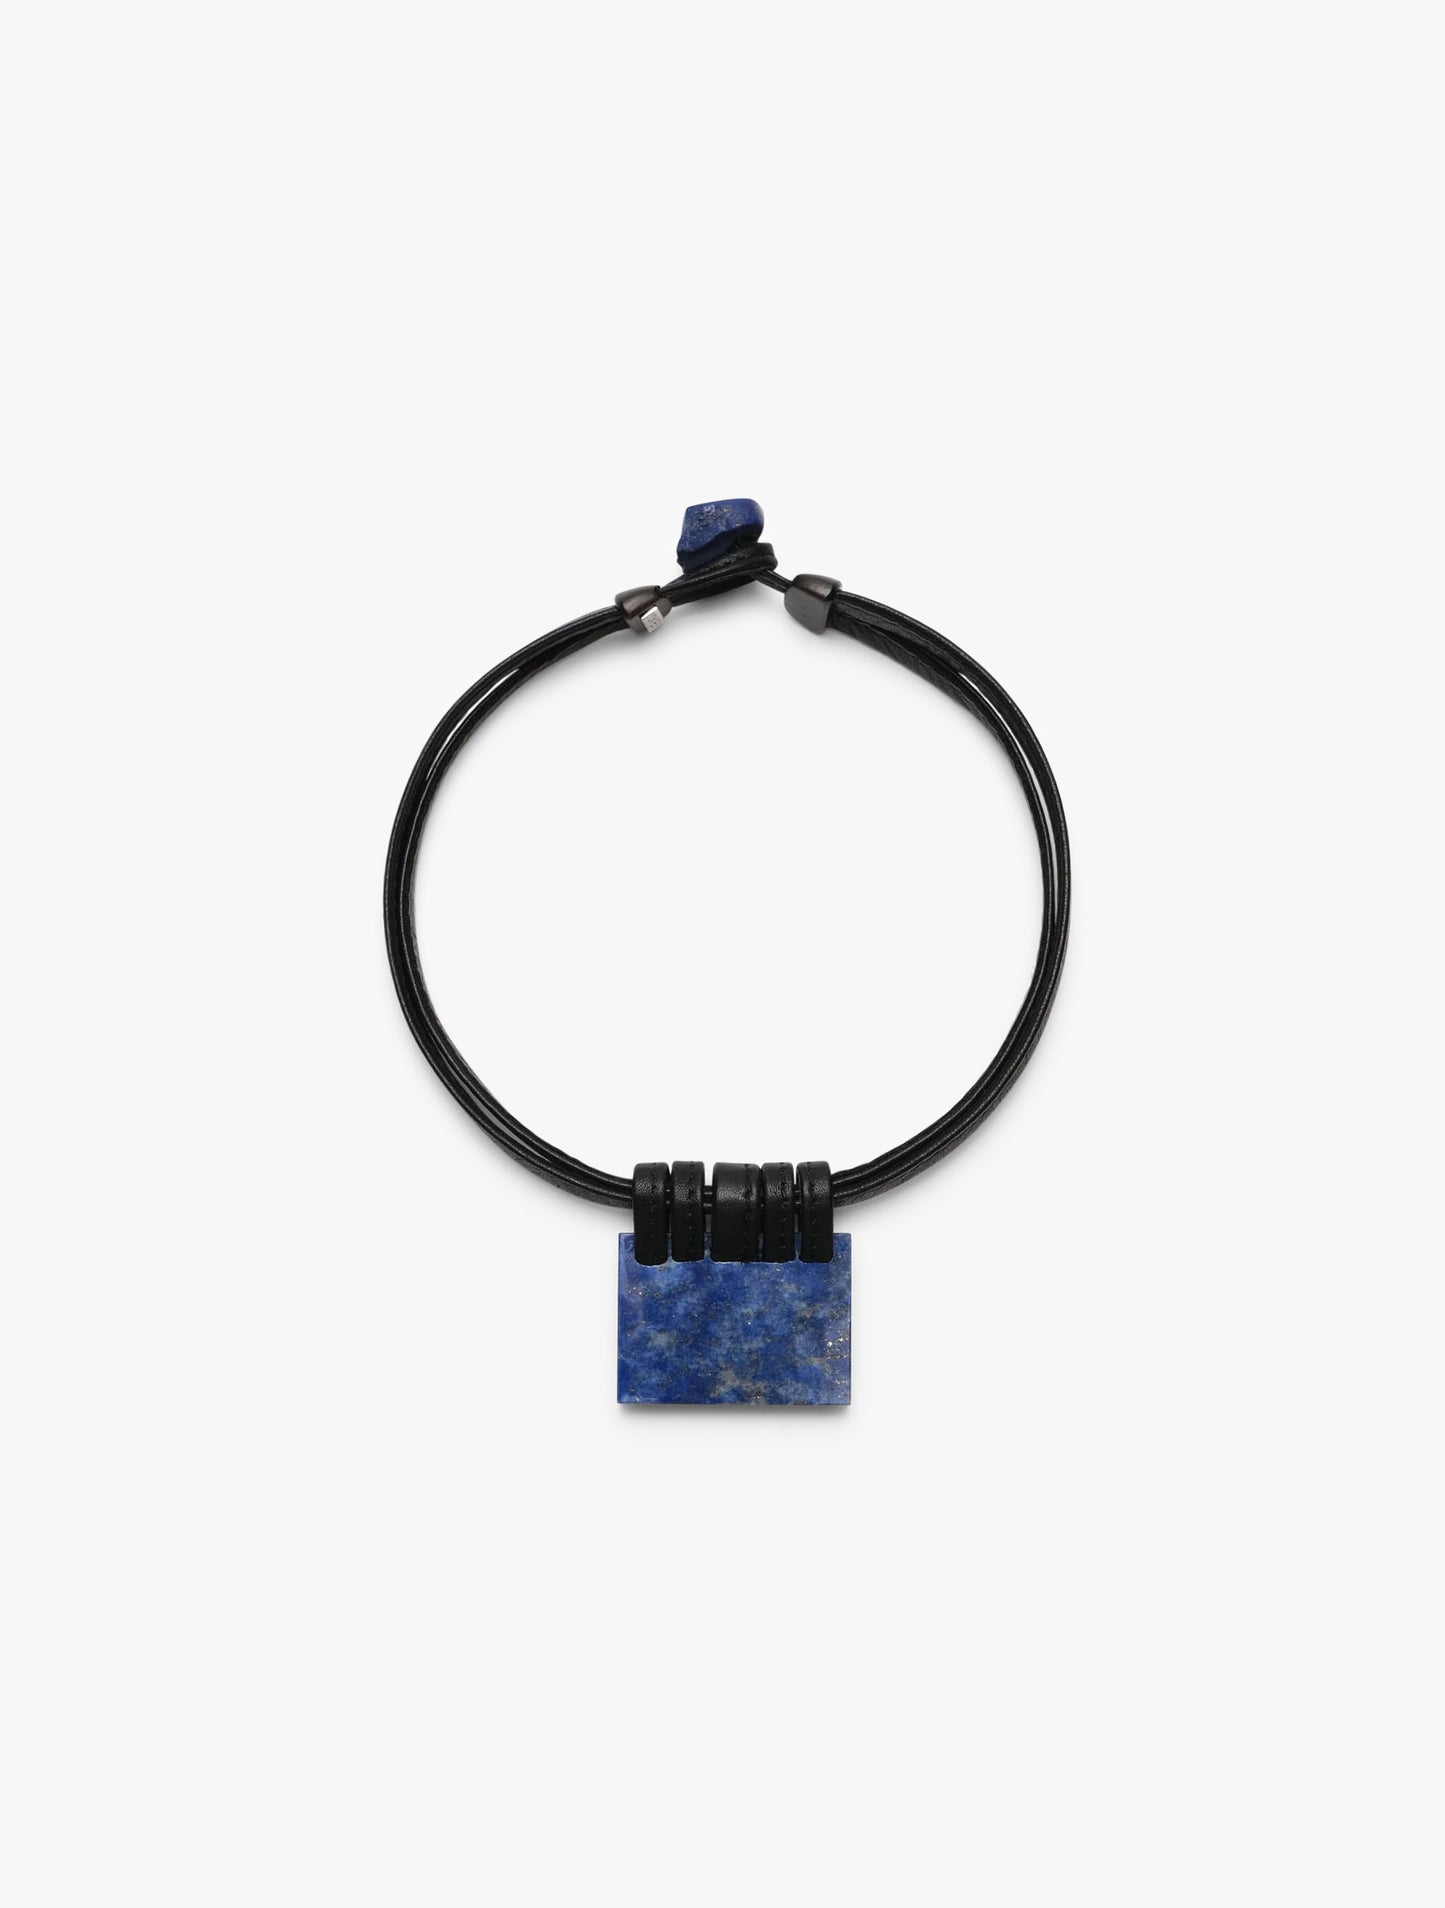 Necklace: lapis lazuli, ebony, leather